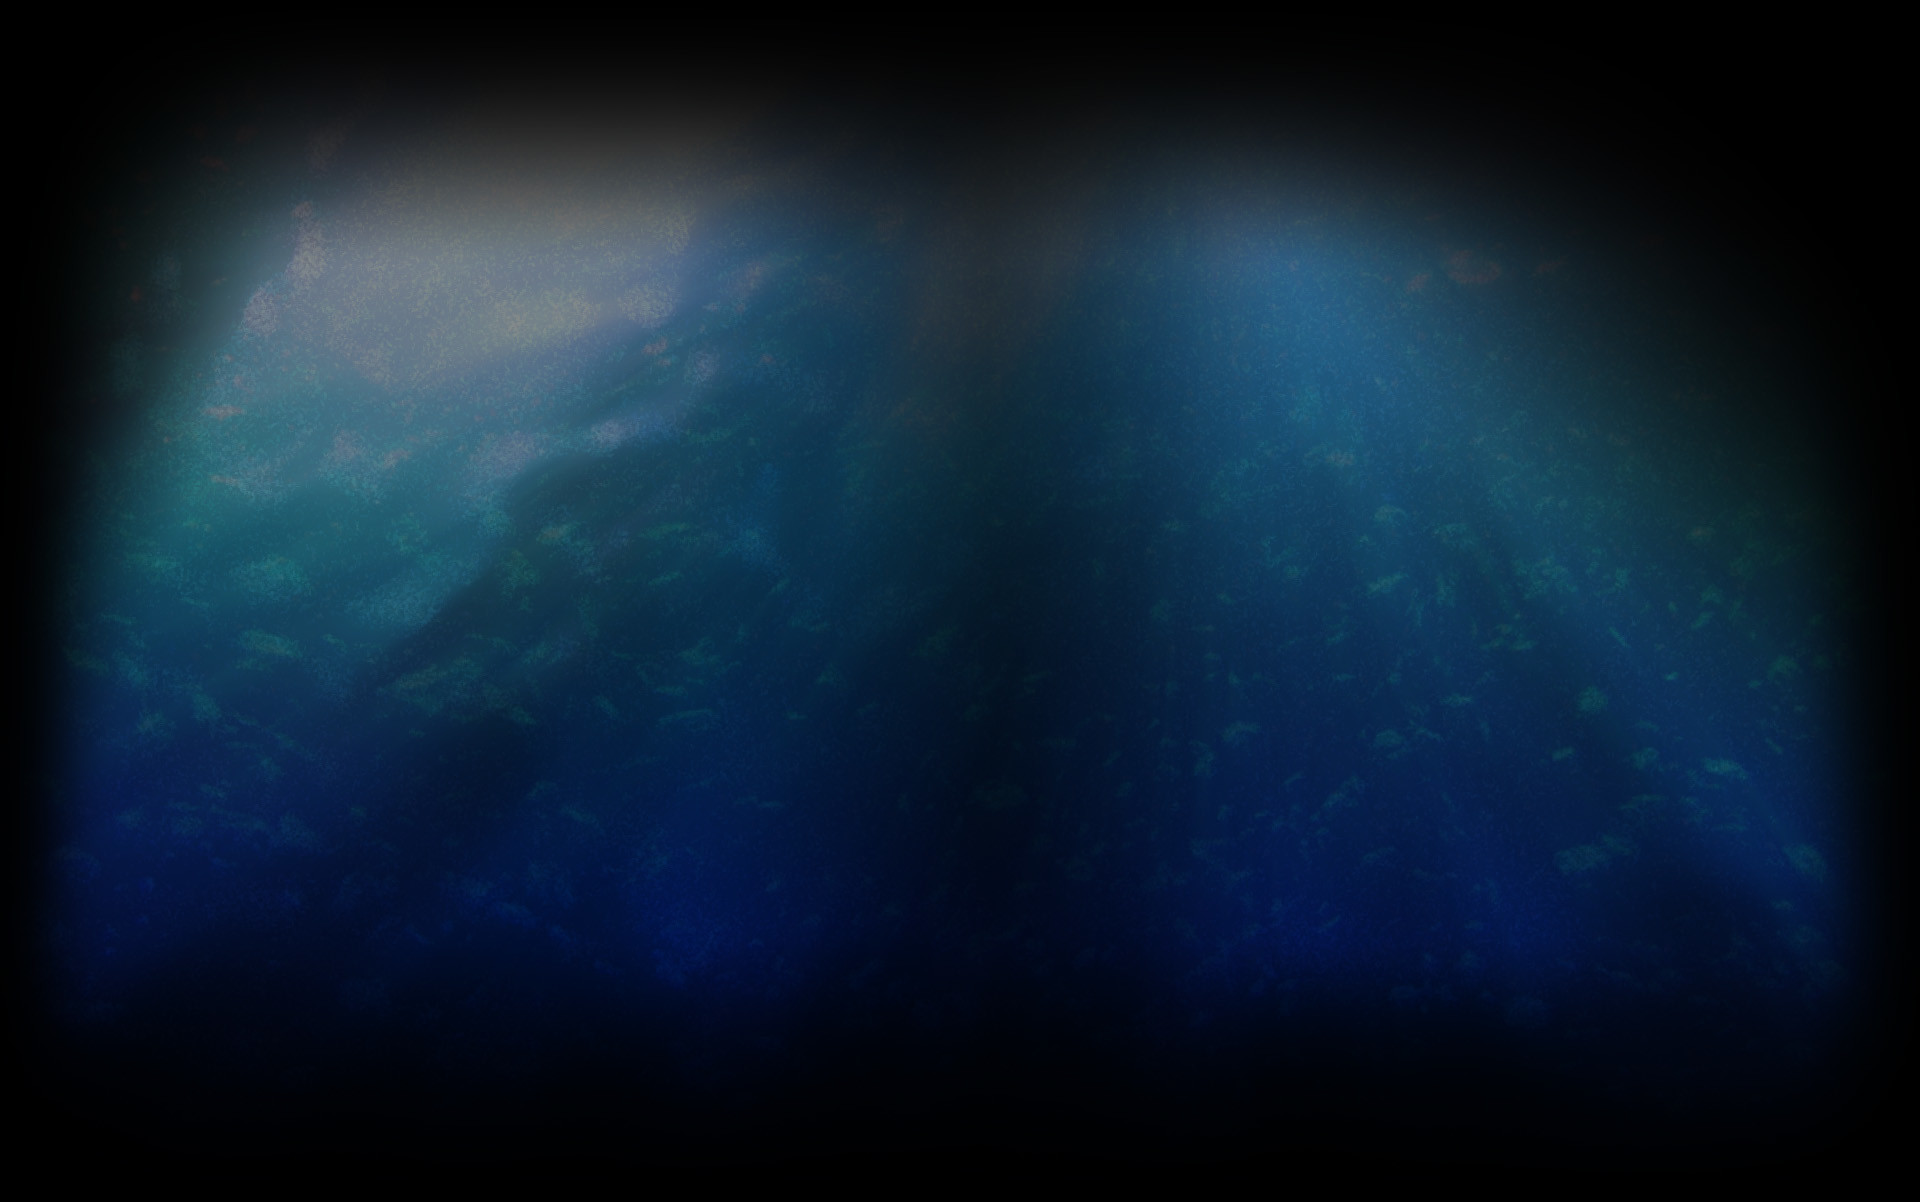 Under Water Background ·① WallpaperTag
